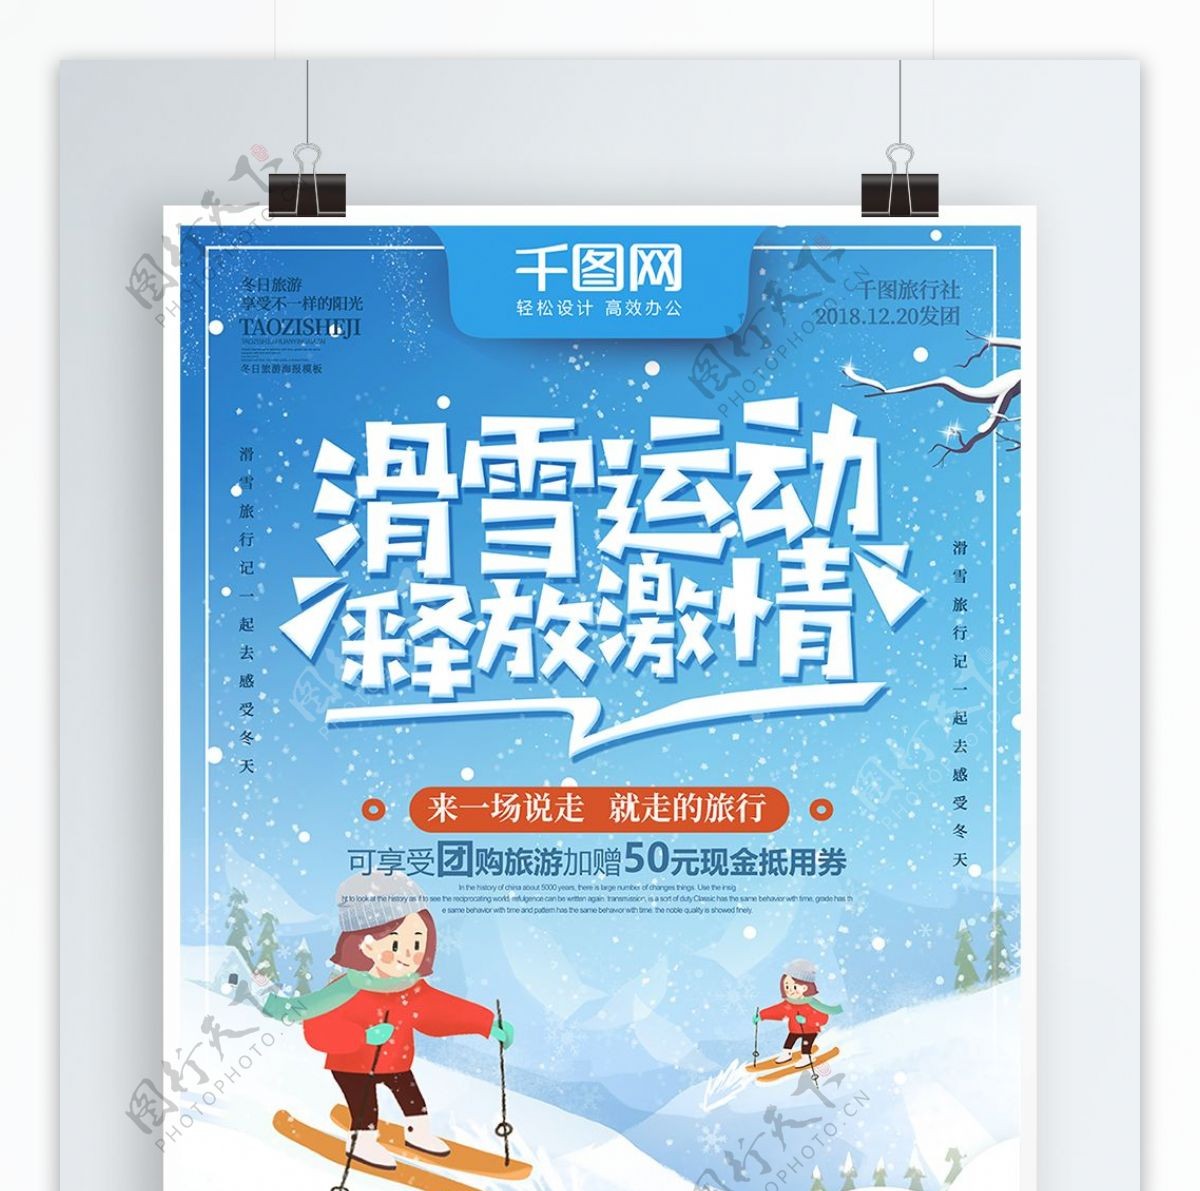 蓝色创意字体滑雪运动释放激情旅游海报